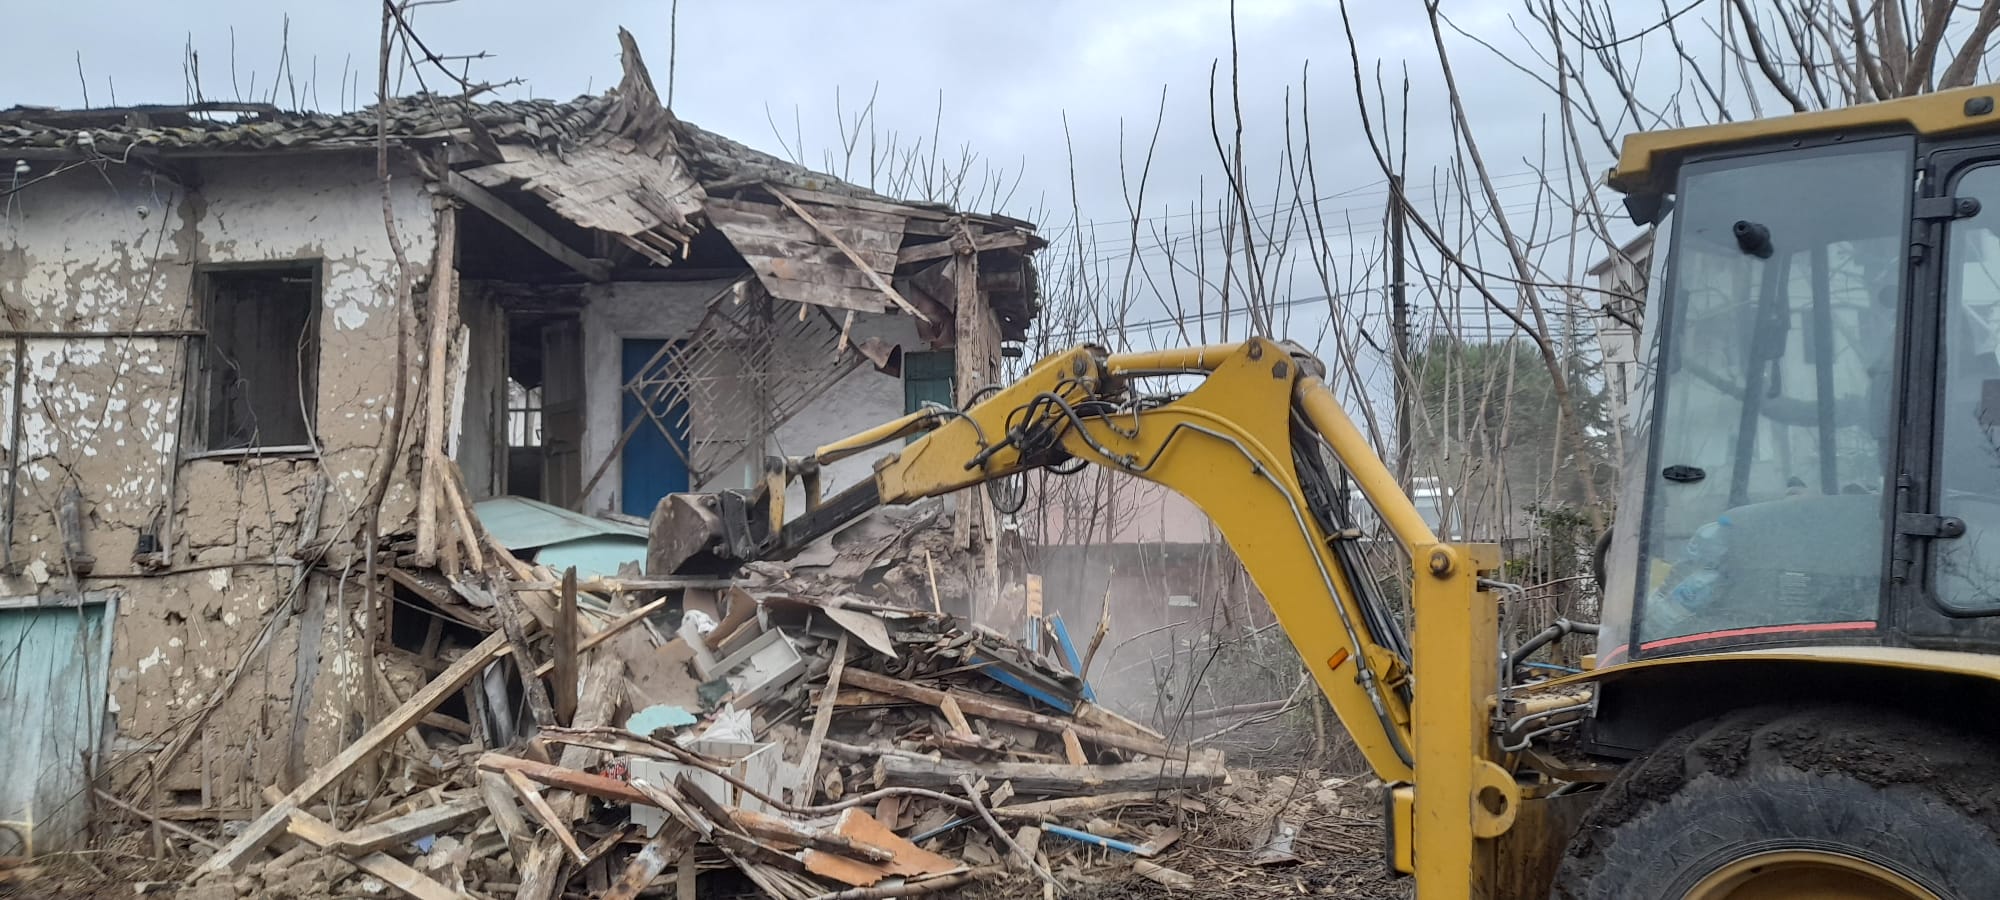 Osmangazi’de metruk binaların yıkımı sürdürülüyor